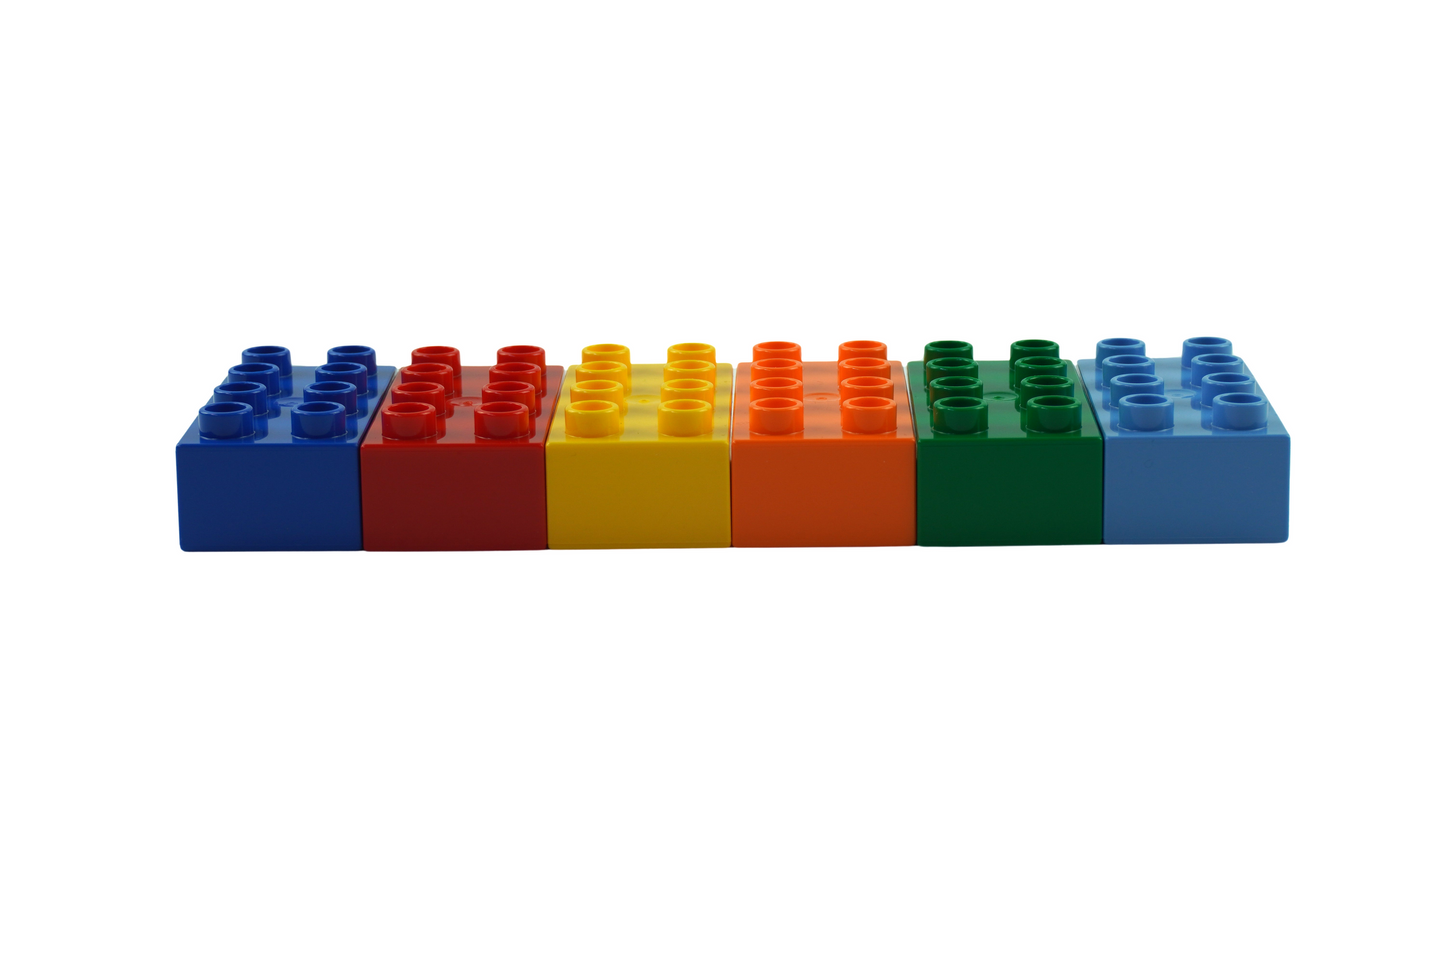 LEGO® DUPLO® 2x4 Steine Bausteine Grundbausteine Bunt Gemischt - 3011 NEU! Menge 10x